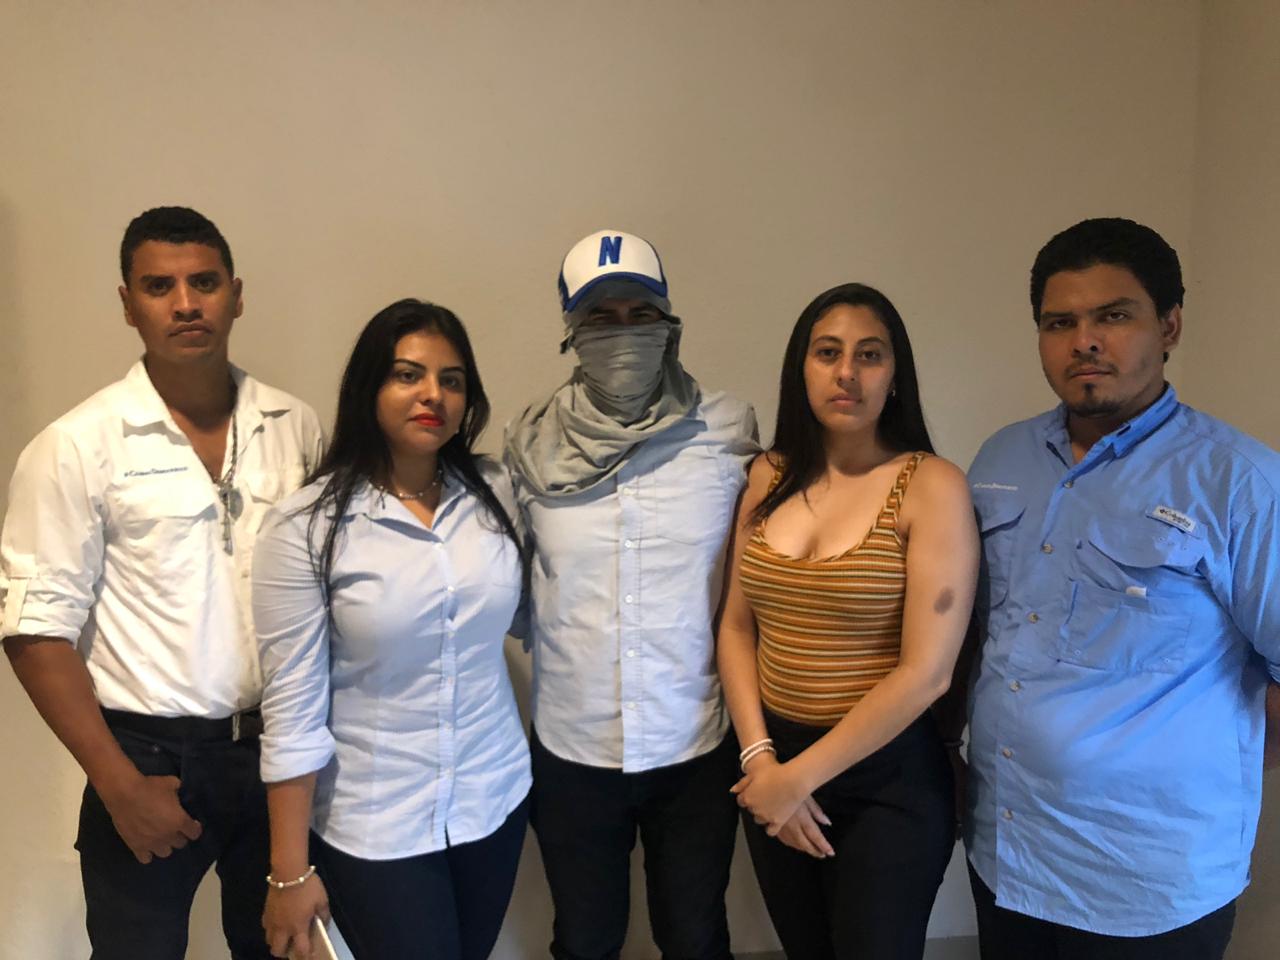 Policía orteguista retuvo y robó pertenencias a siete jóvenes activistas de Managua